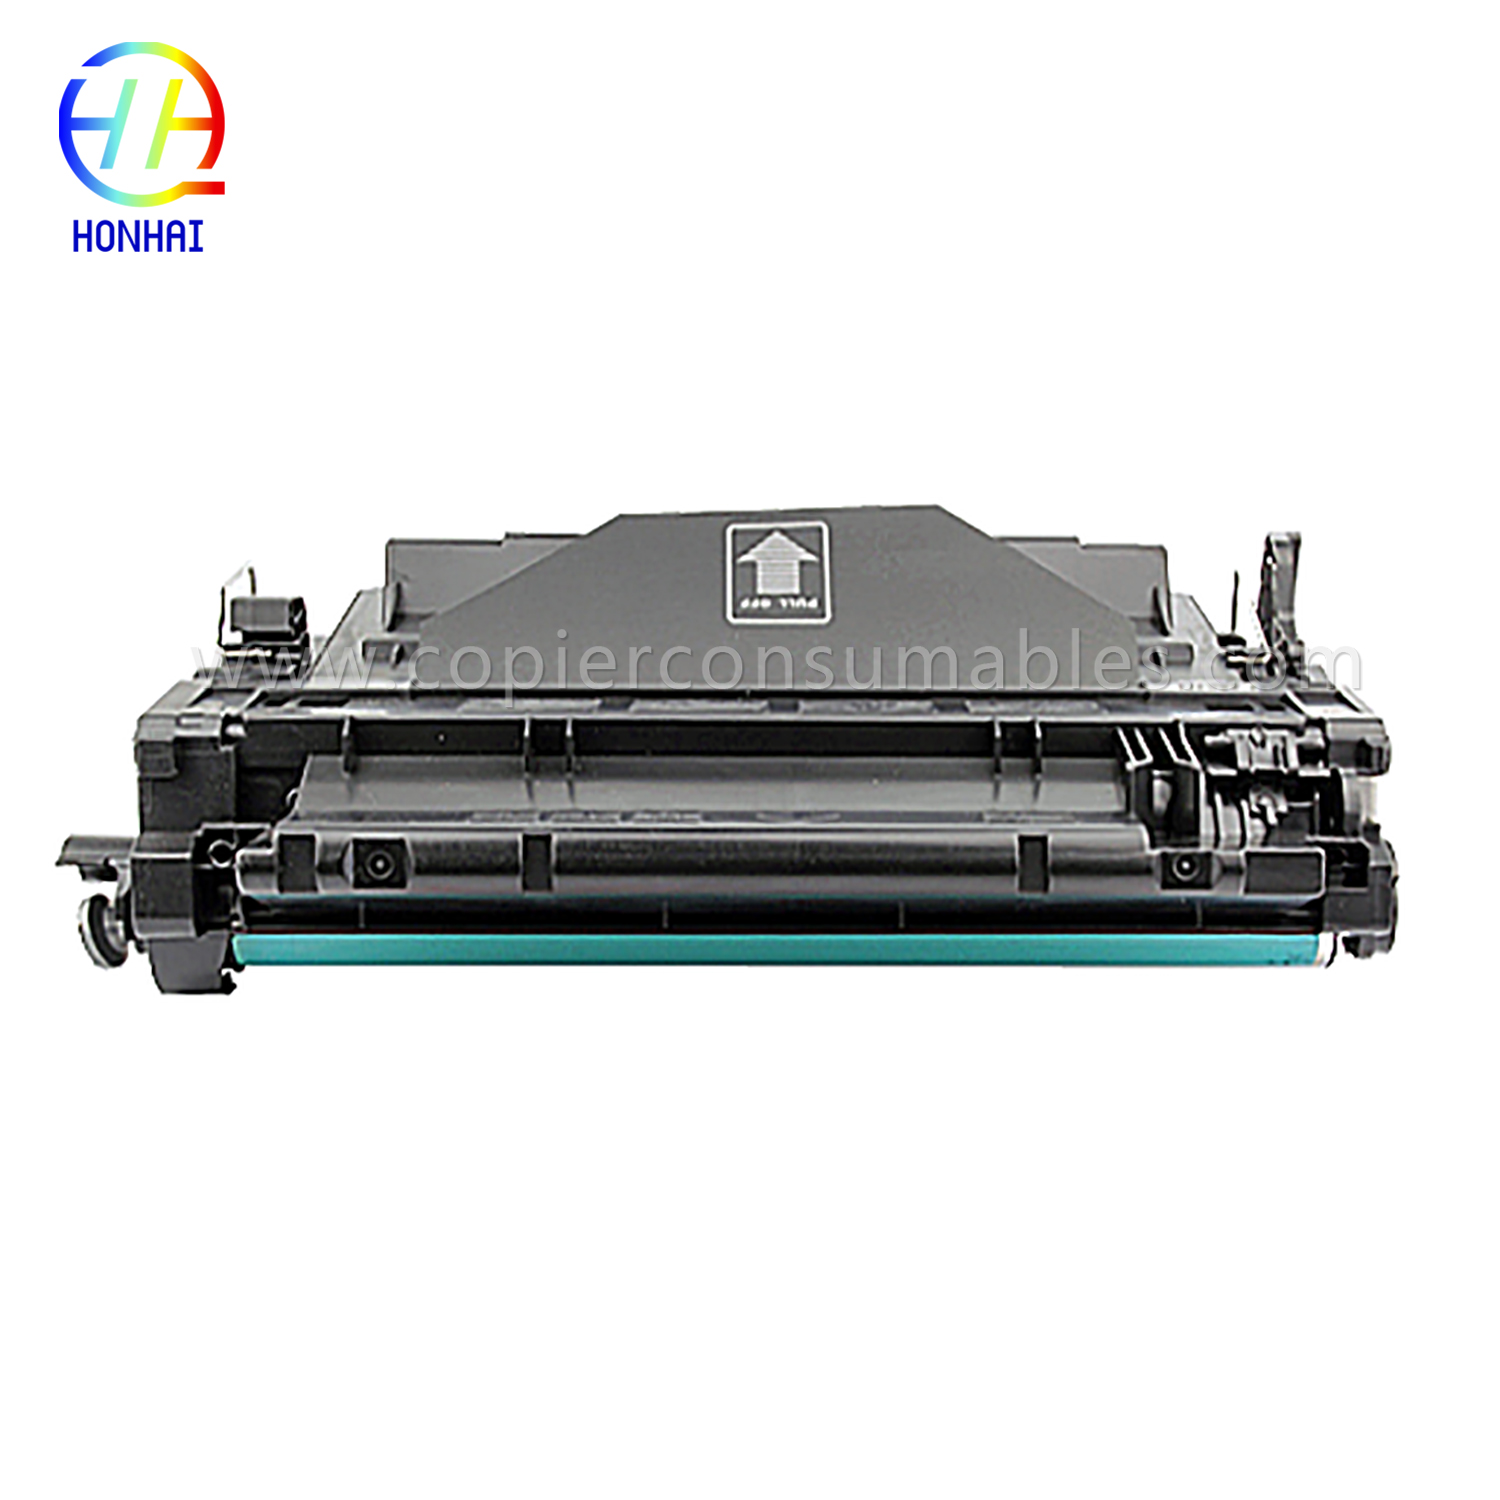 Barvni tonerji za HP LaserJet Pro MFP M521dn Enterprise P3015 CE255X